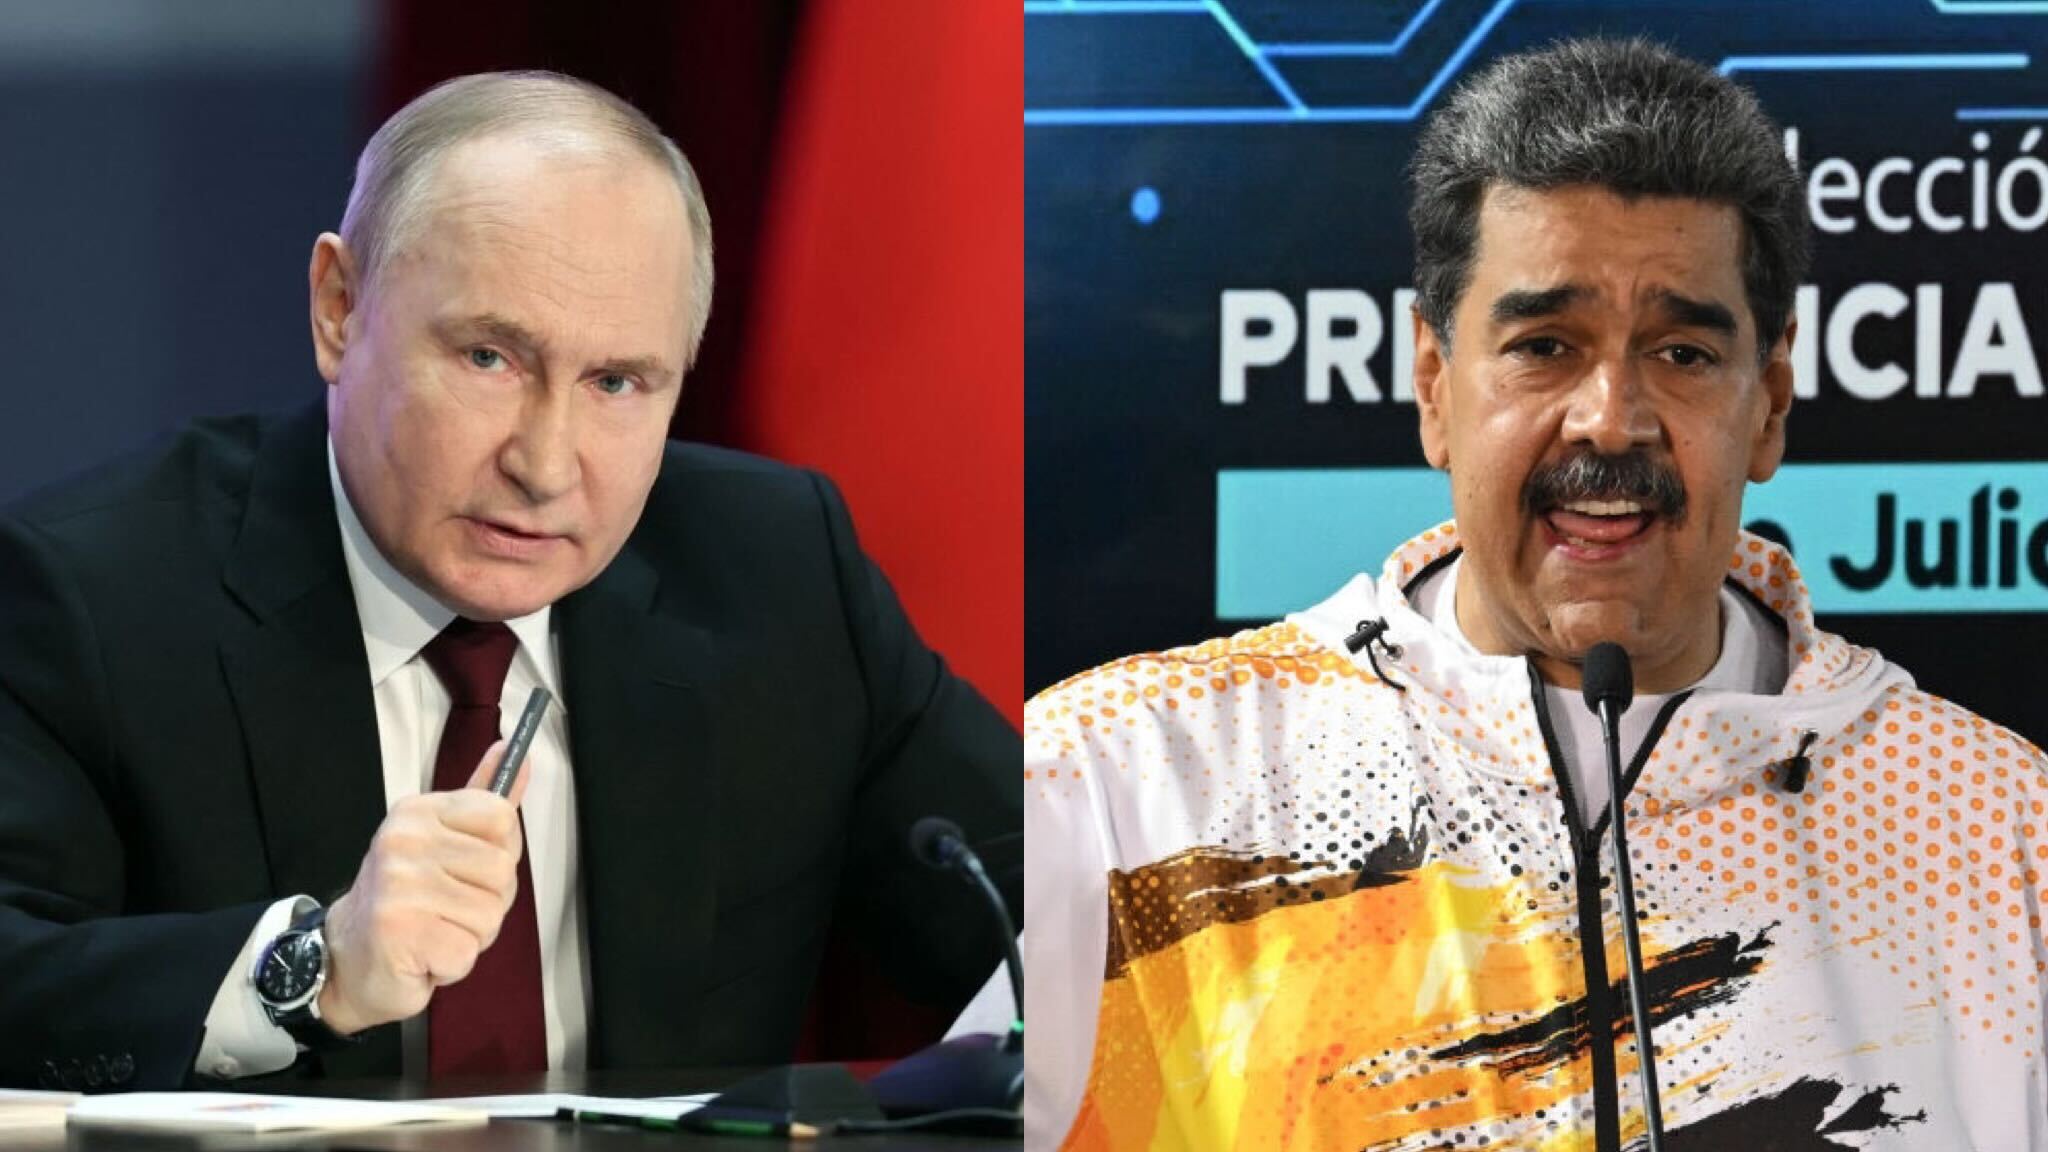 El Kremlin afirma que está “ultimando fechas” para una visita a
Rusia de Nicolás Maduro